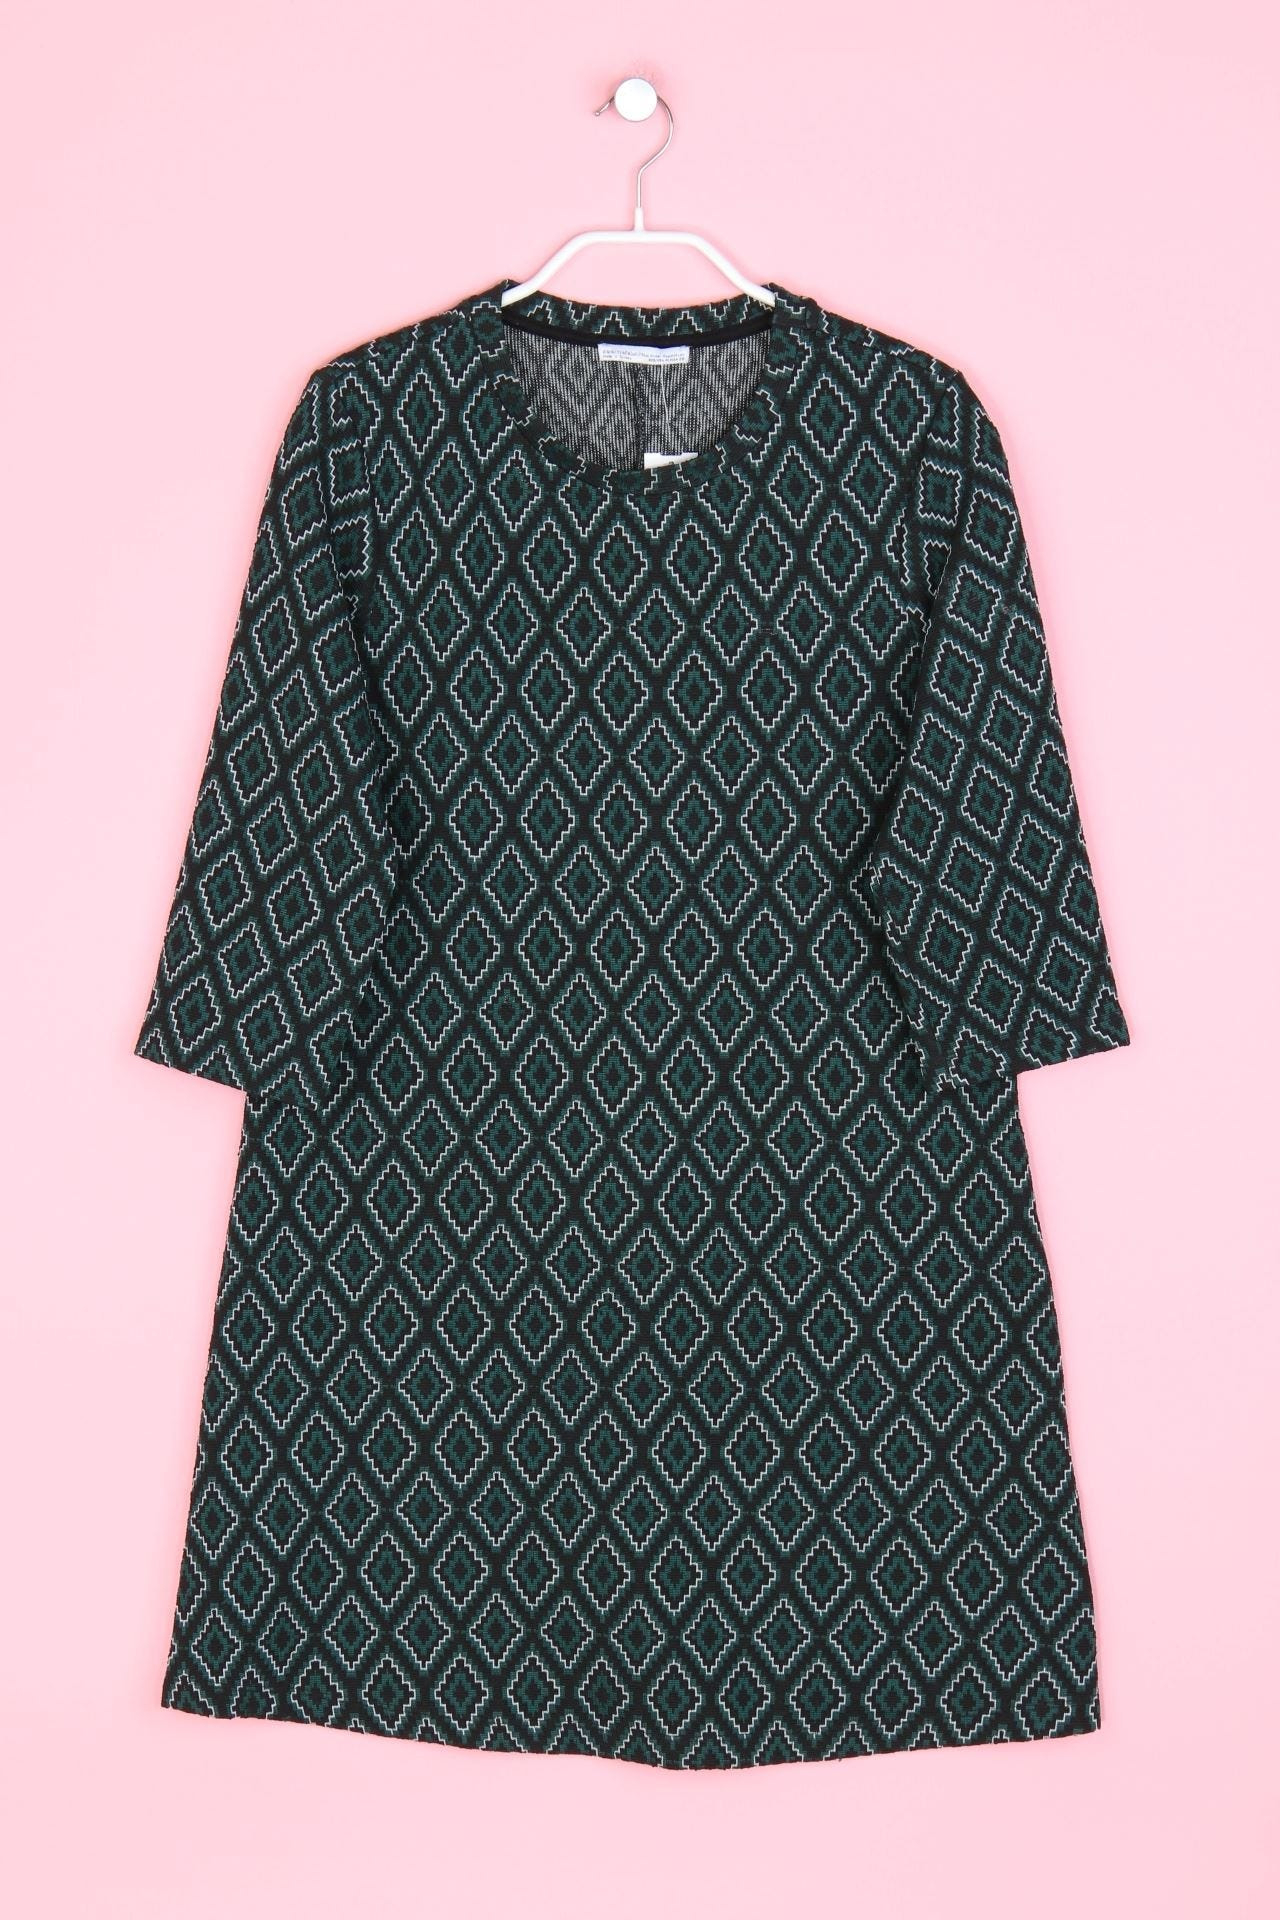 Zara Trf Shiftkleid Mit M Schwarz Dress 648  Ebay